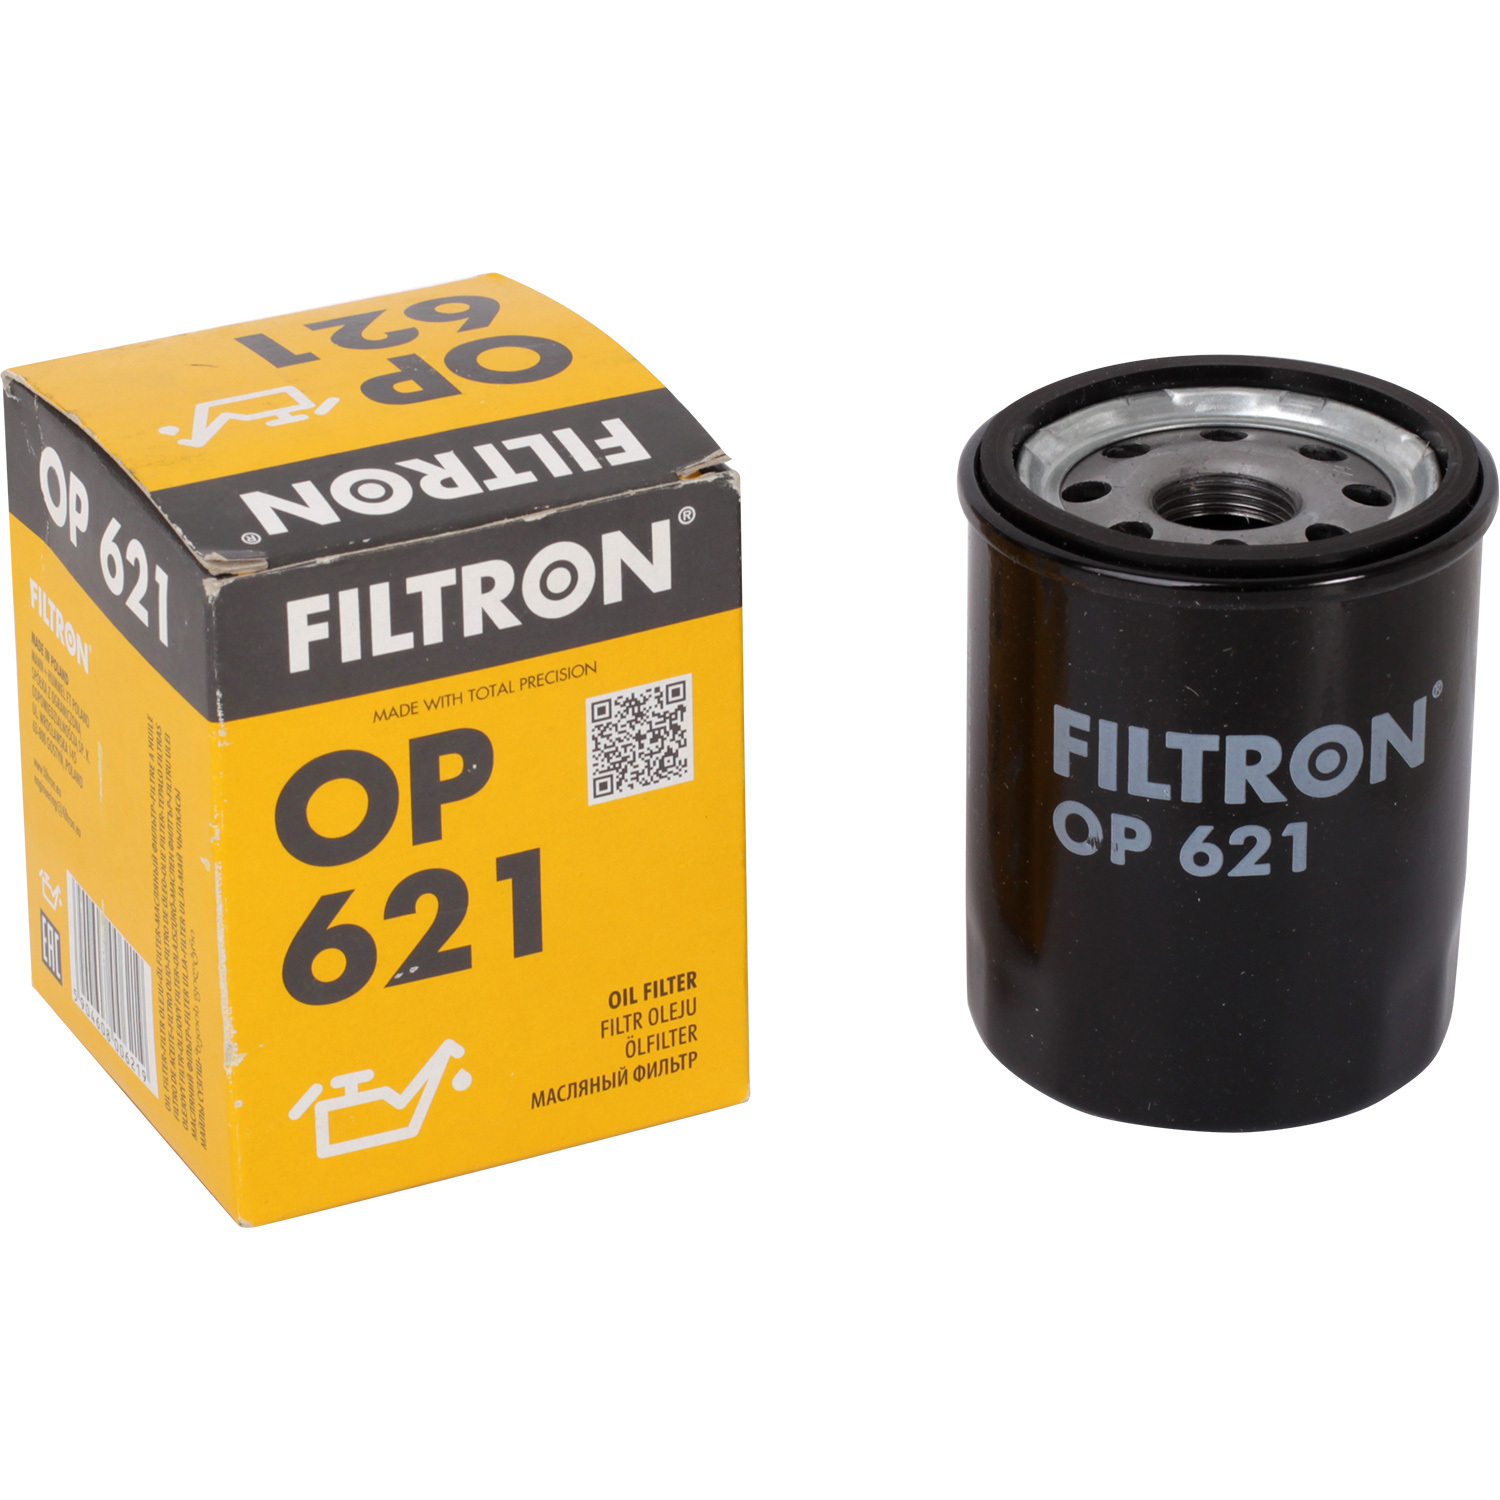 фильтры filtron фильтр масляный filtron op595 Фильтры Filtron Фильтр масляный Filtron OP621